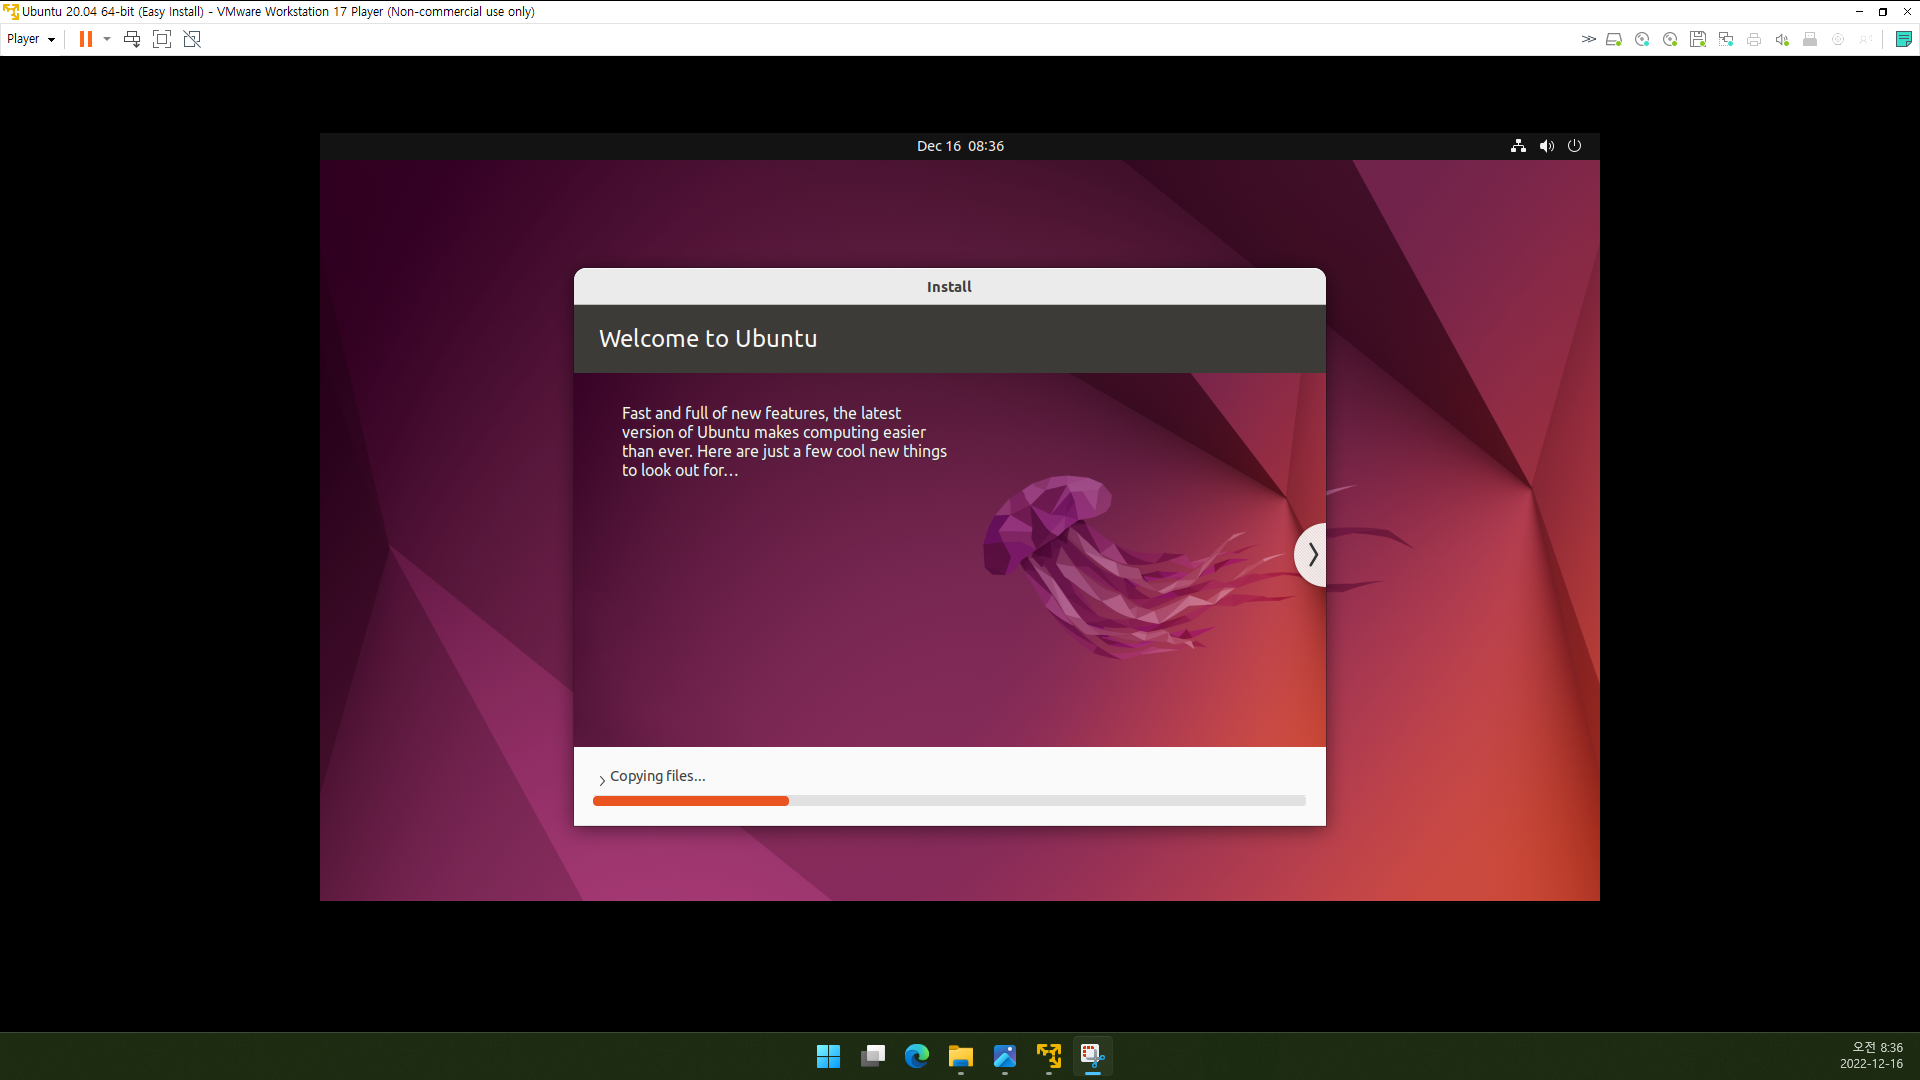 Welcome to Ubuntu